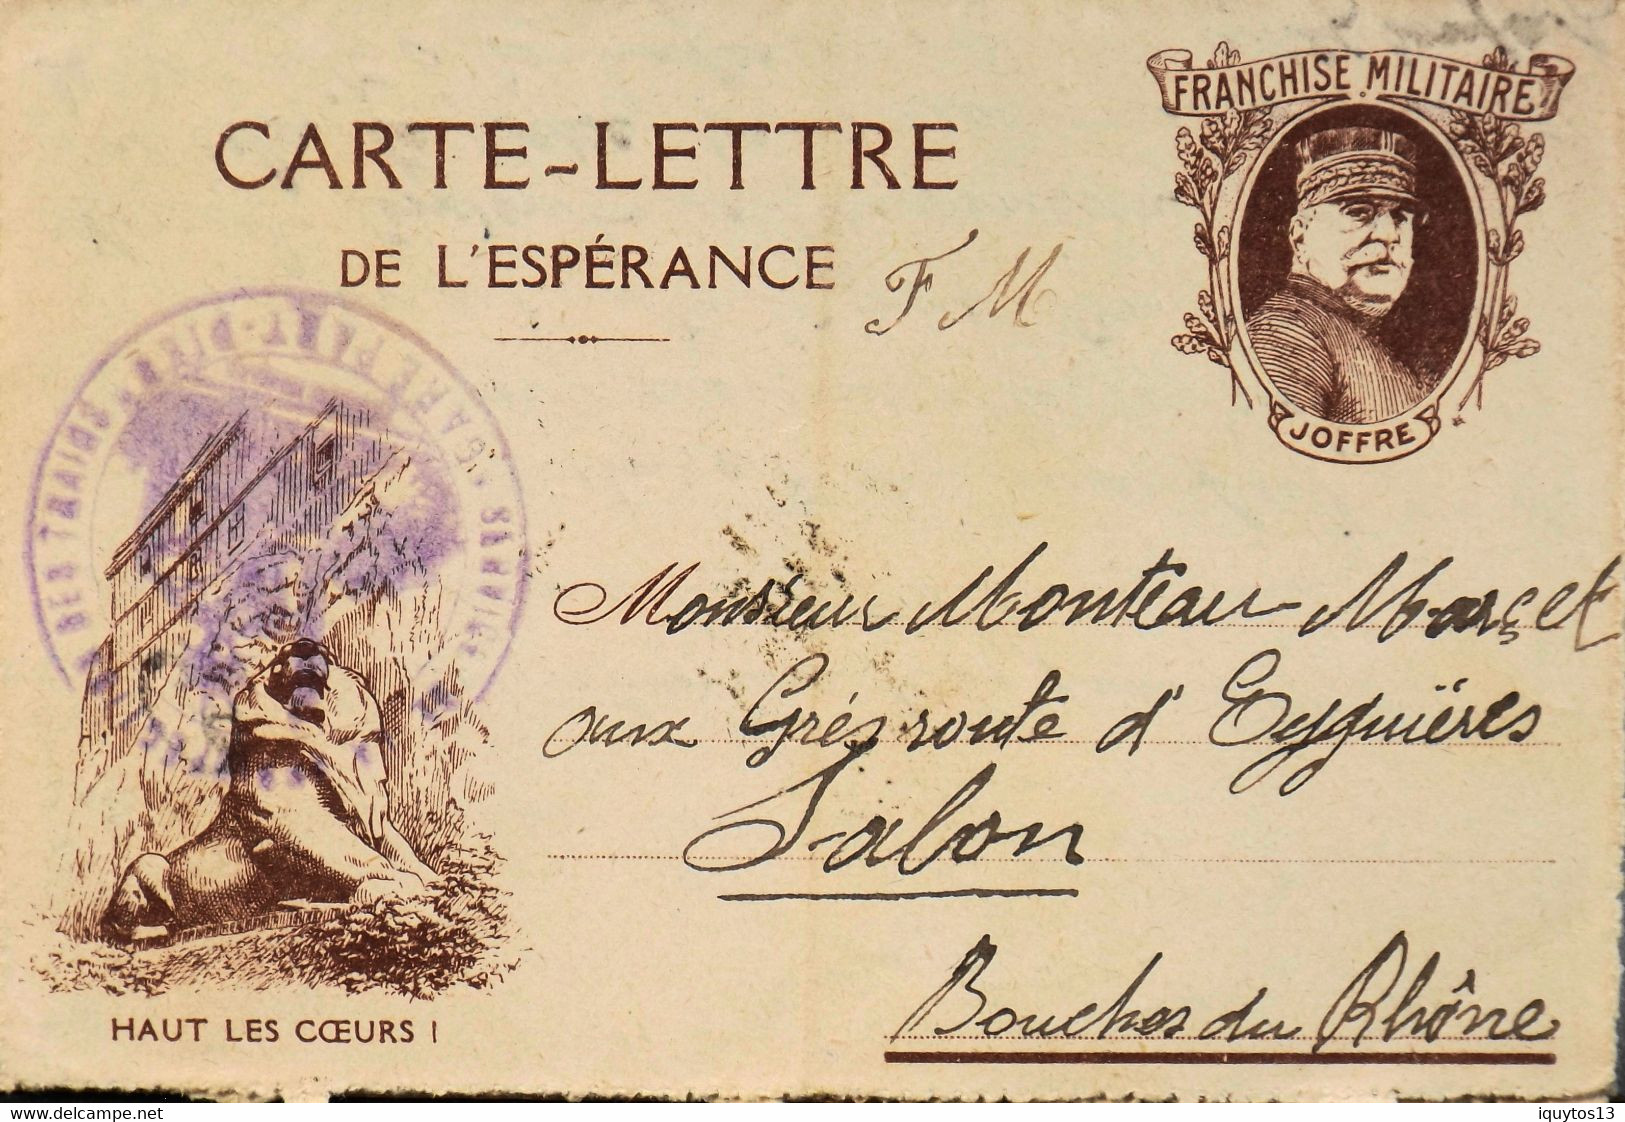 Carte Lettre De L'Espérance / Franchise Militaire "JOFFRE" - Tampon Du Sce De La Désinfection Des Trains - BE - Covers & Documents